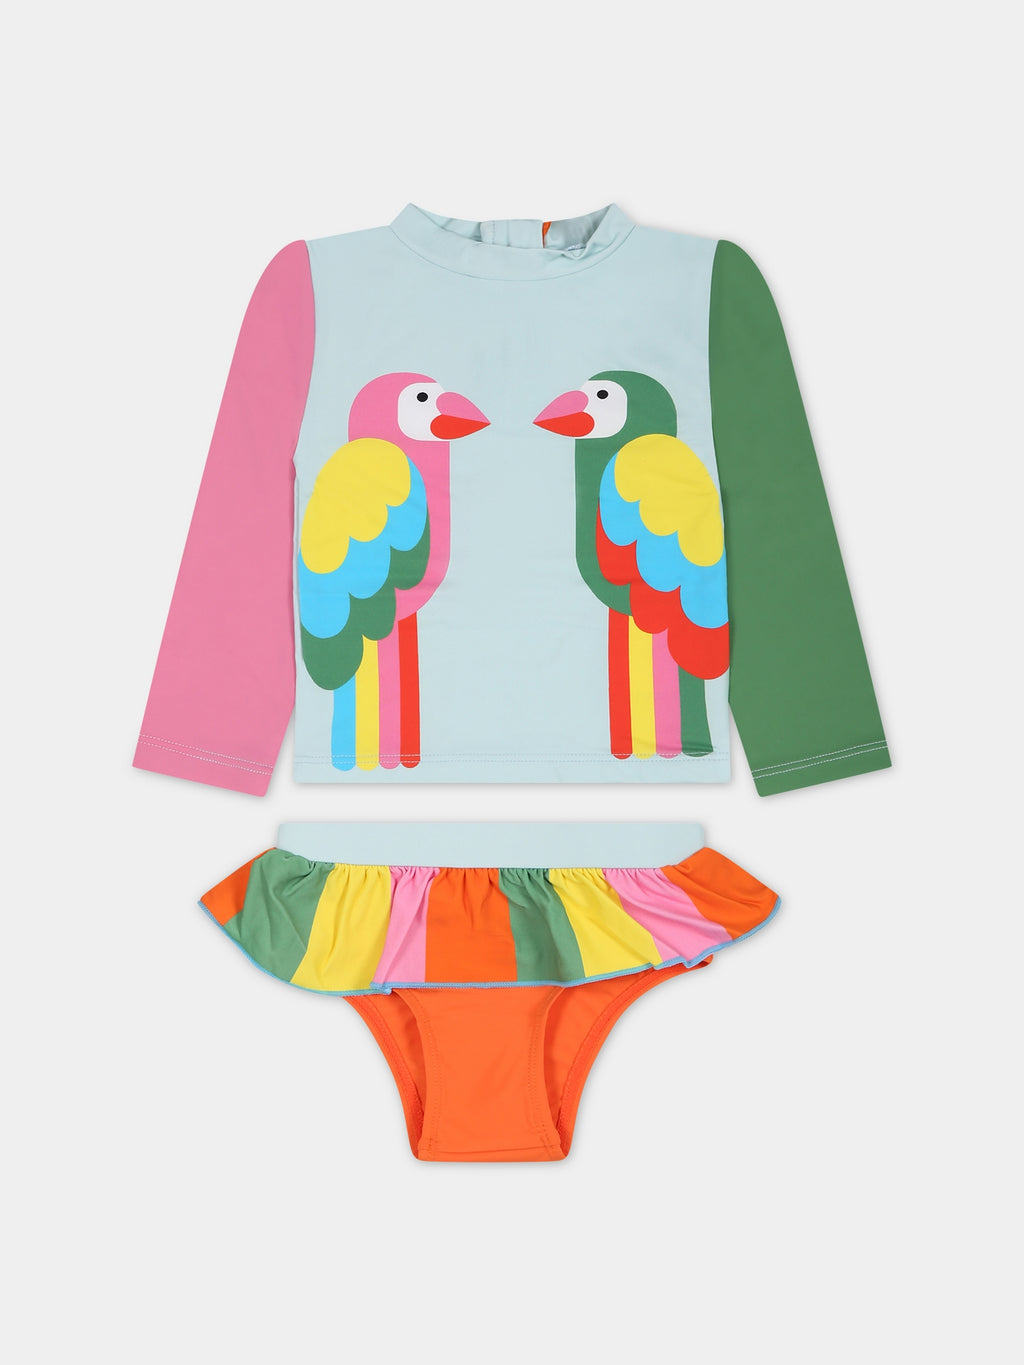 Ensamble multicolore pour bébé  fille avec imprimé perroquets